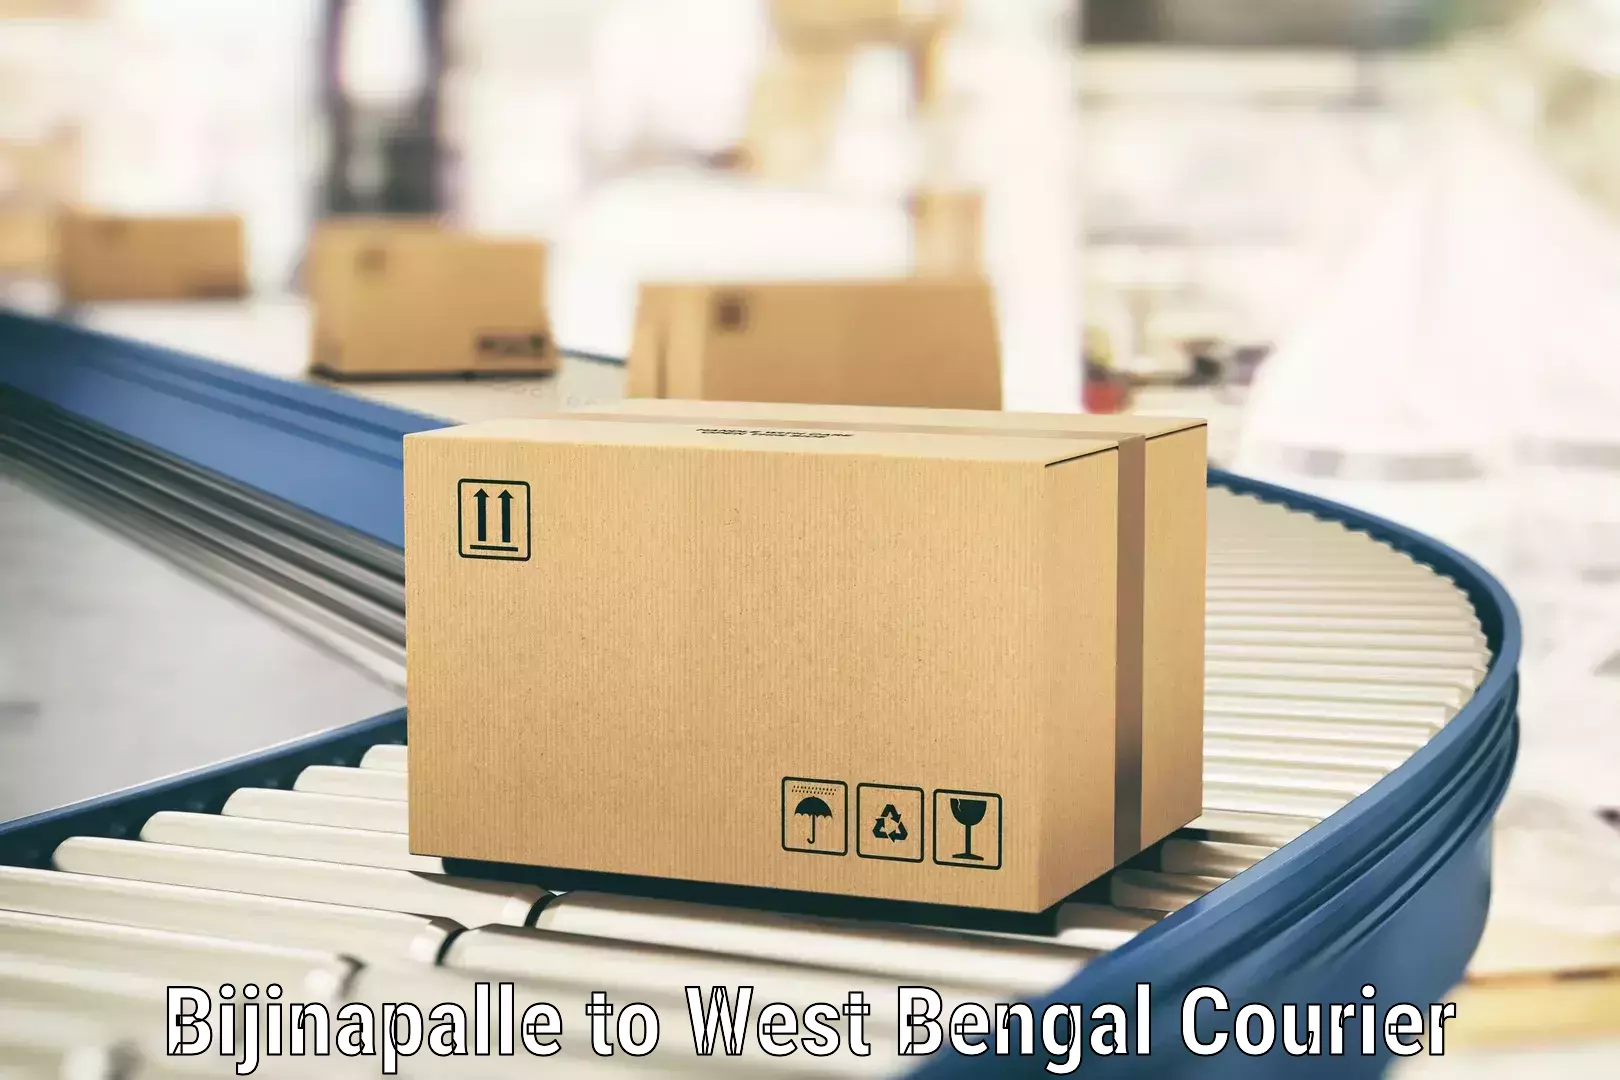 Next-generation courier services Bijinapalle to Manikchak